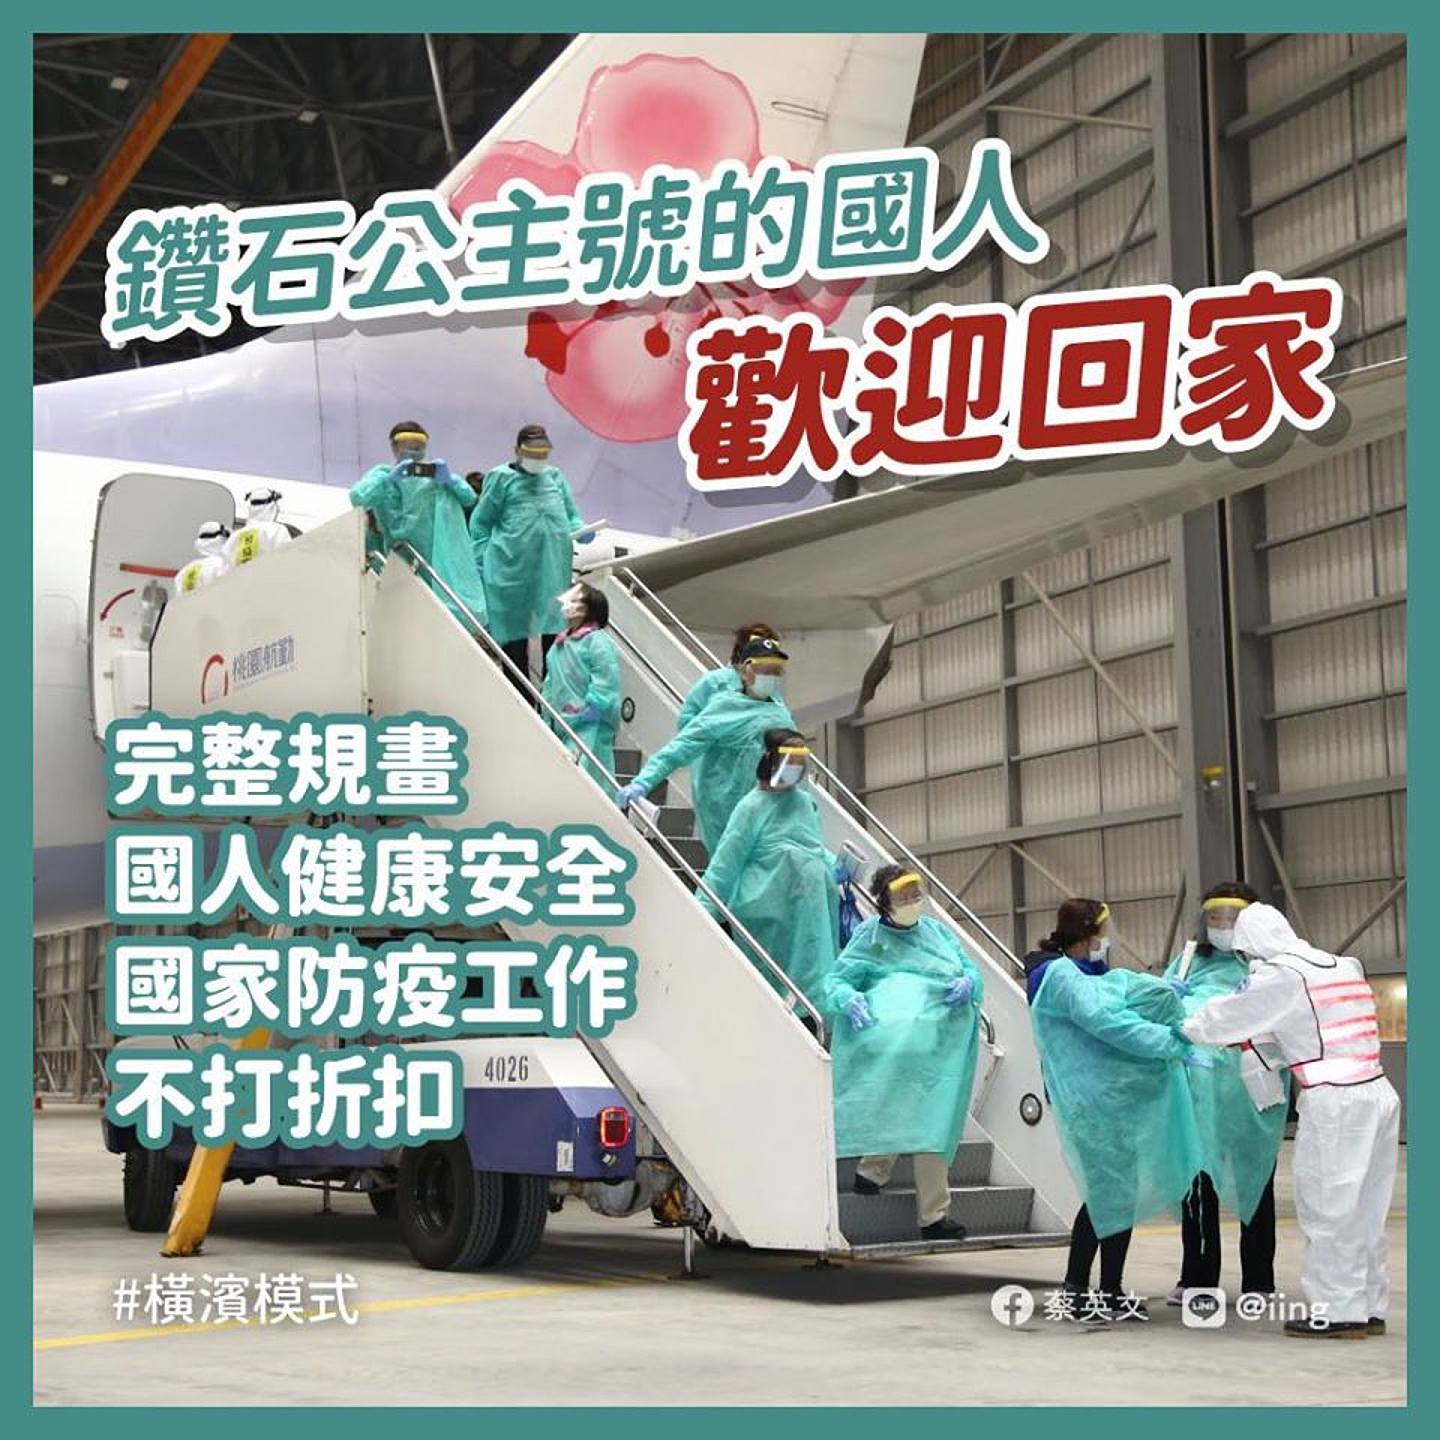 台政府派专机接回钻石公主号上19名未确诊台人，蔡英文大赞，并定义为“横滨模式”。（Facebook＠蔡英文）